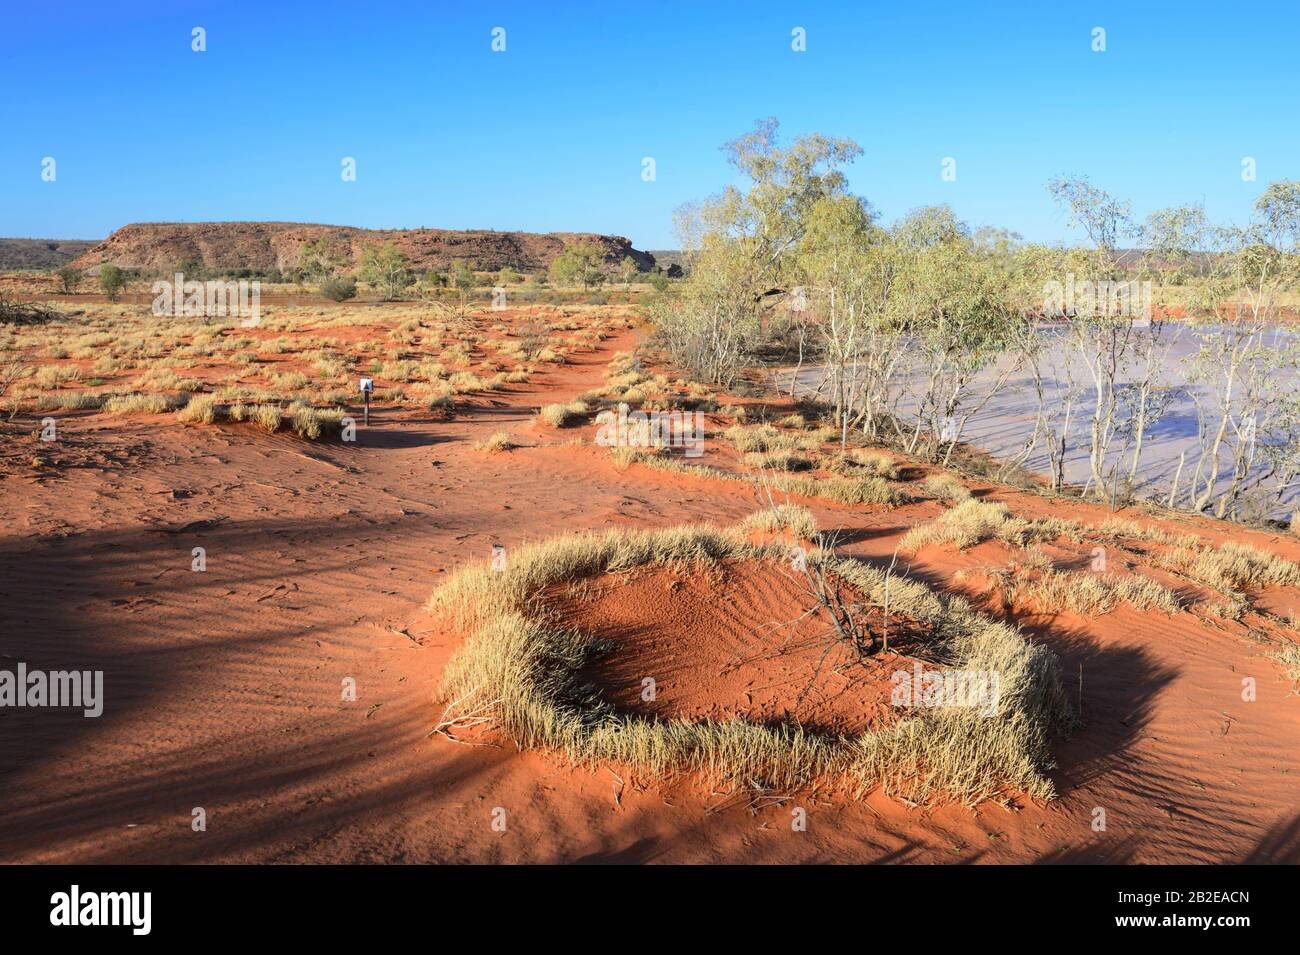 Vue panoramique sur les dunes de sable rouge et les herbes jaunes de la Réserve de conservation de Rainbow Valley, au sud d'Alice Springs, territoire du Nord, territoire du Nord, Australie Banque D'Images